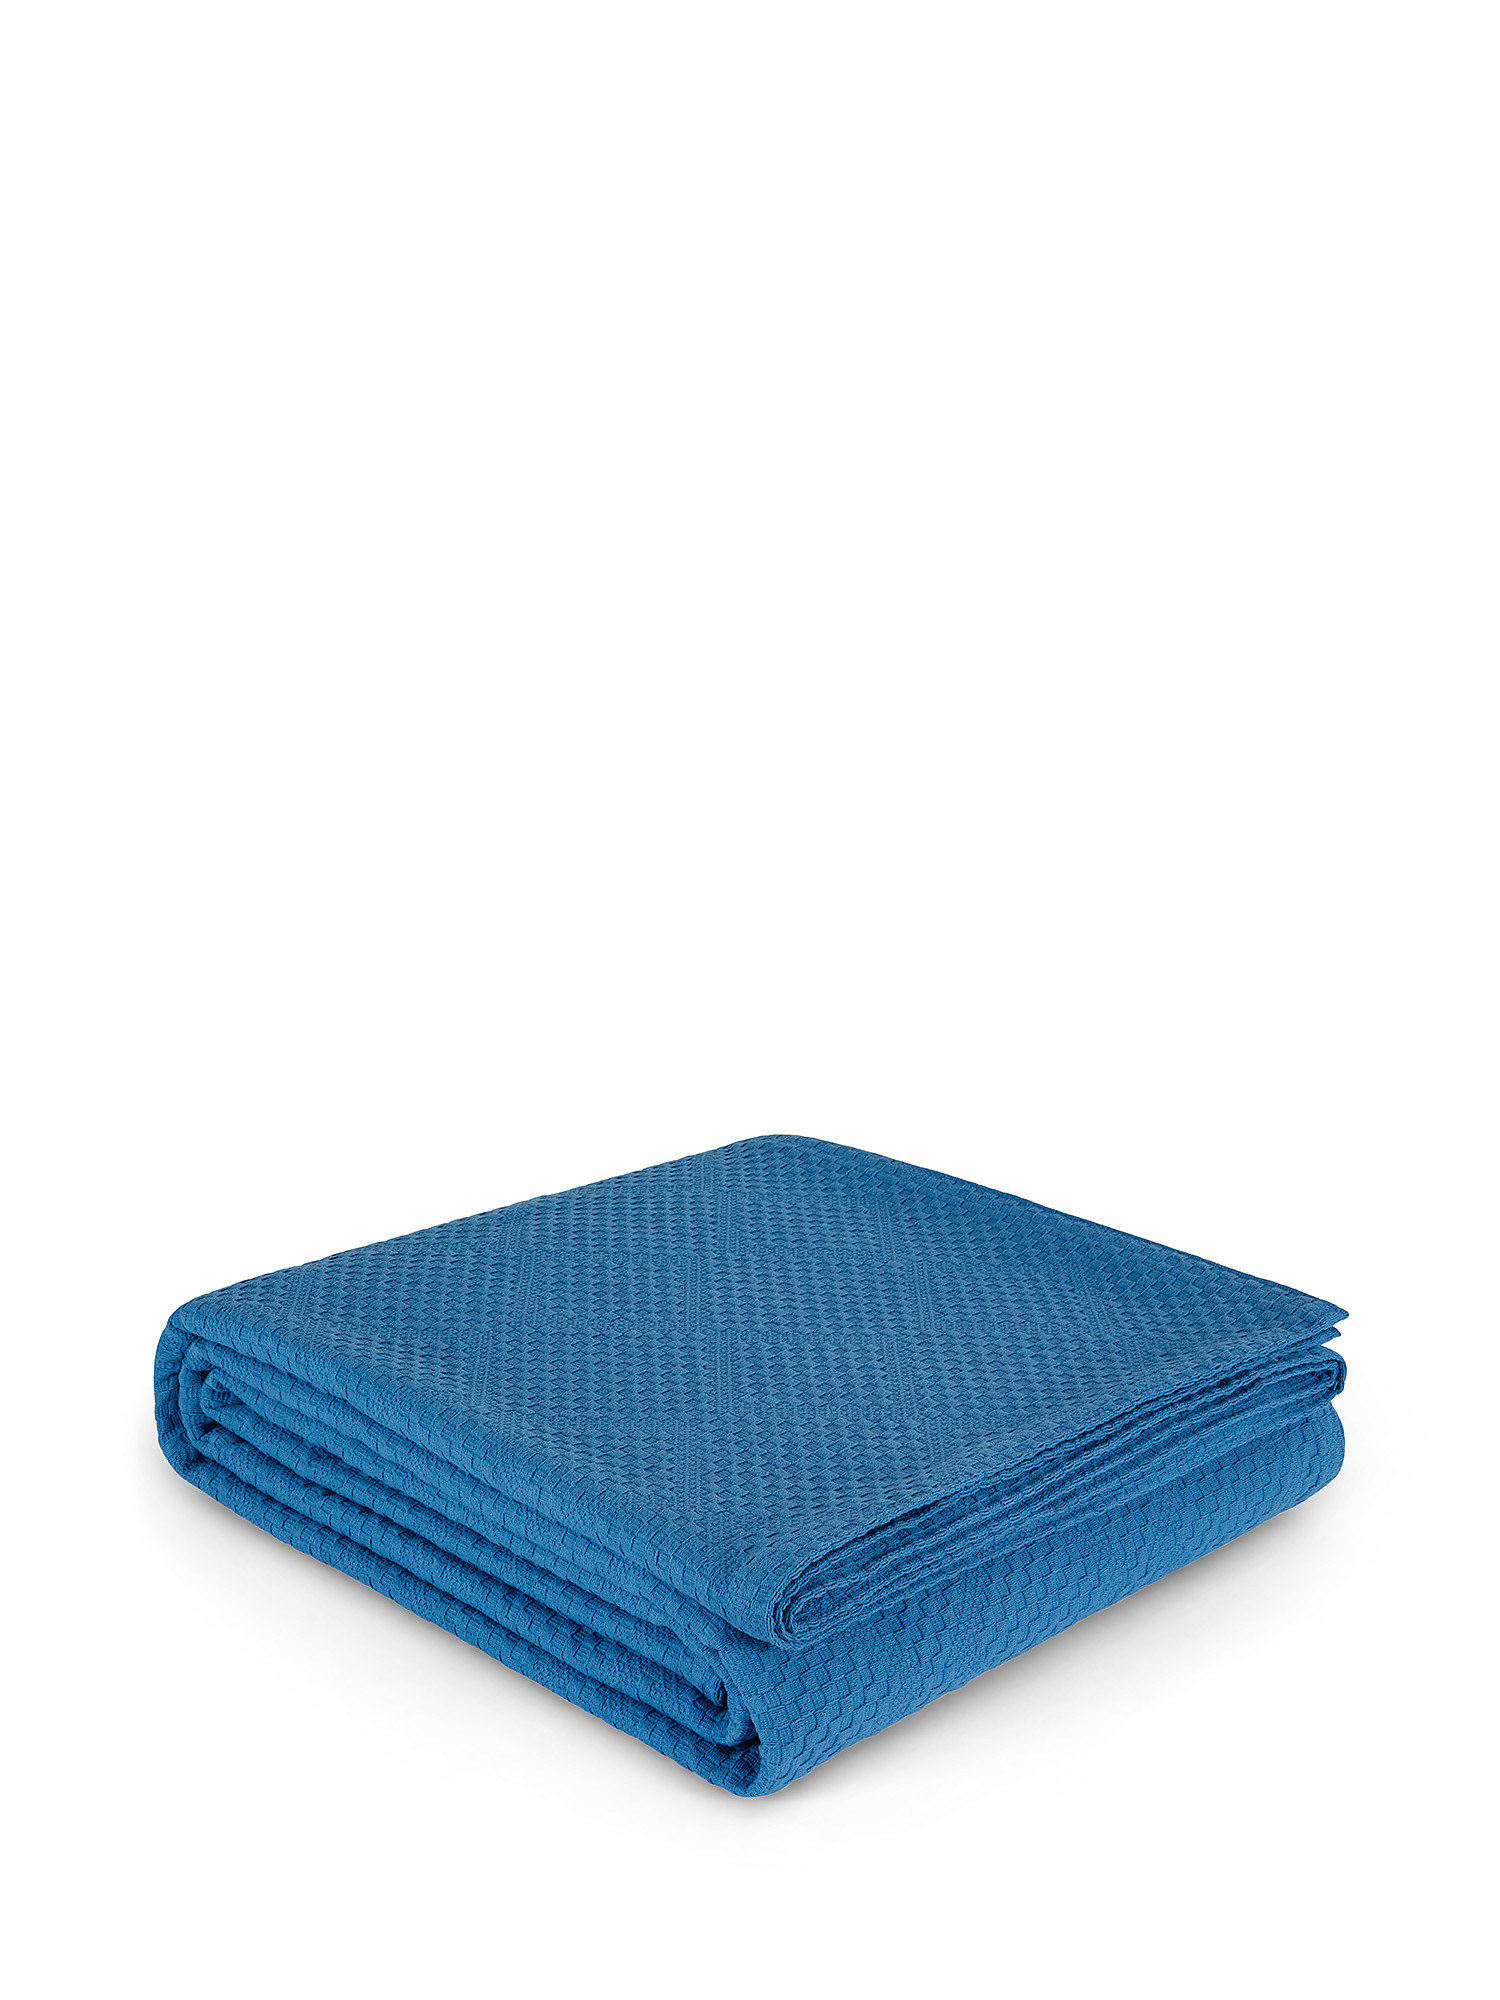 Solid color 100% cotton bedspread, Blue, large image number 0